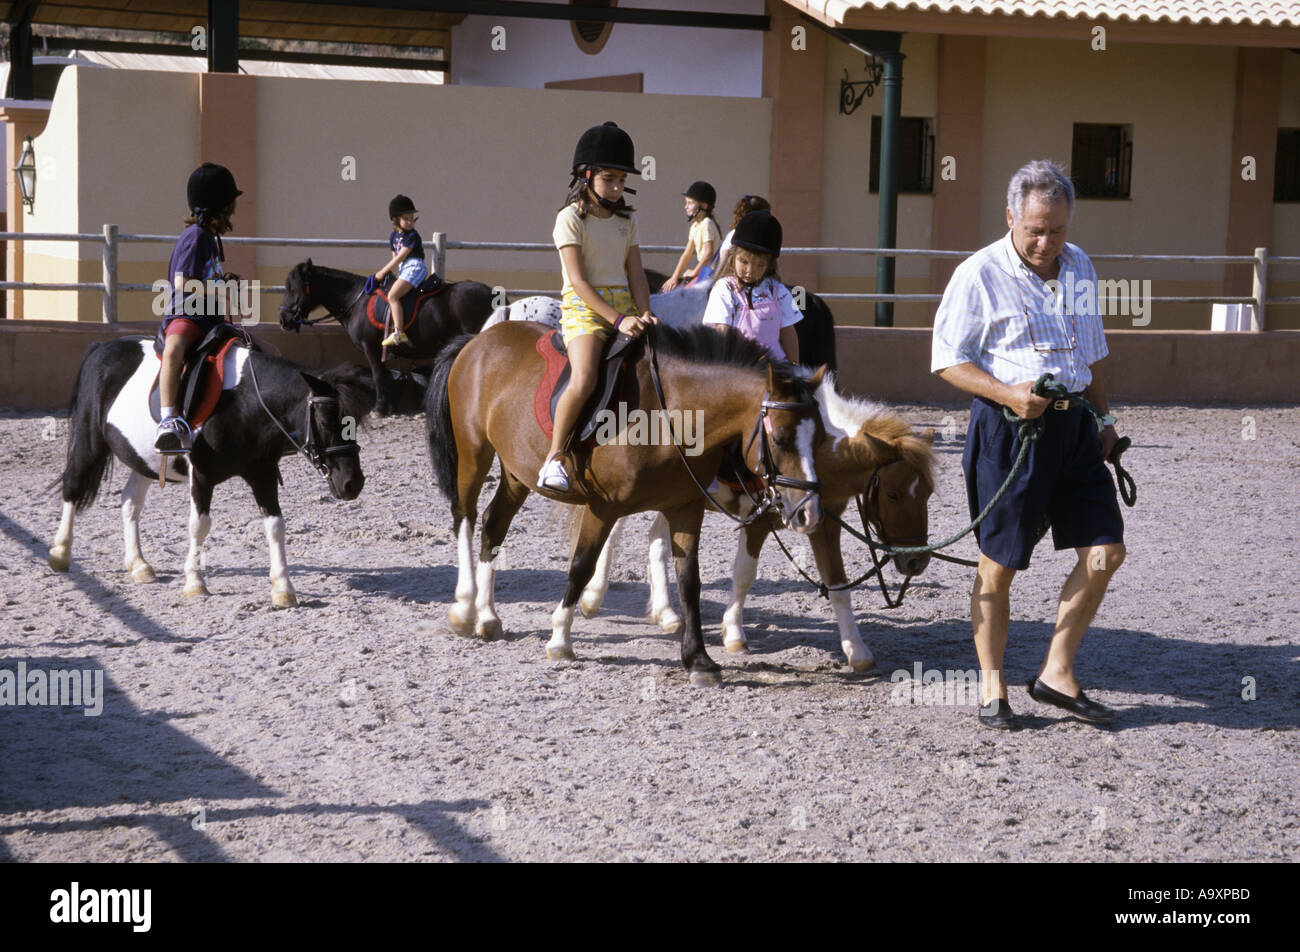 Pony riding. Stock Photo